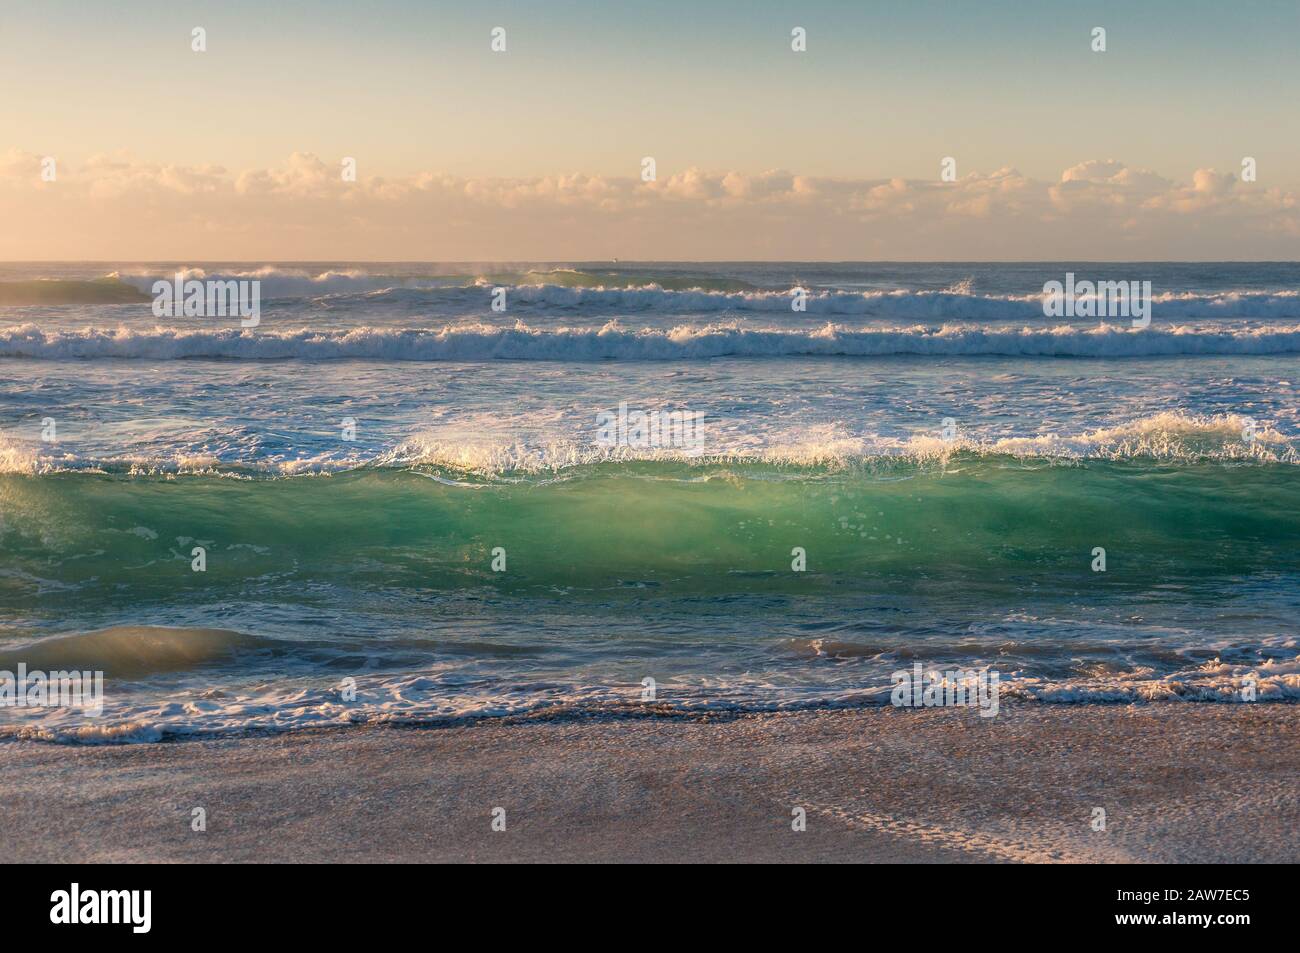 La vague bleue turquoise transparente s'enroule sur la plage de sable au lever du soleil. Mer nature fond Banque D'Images